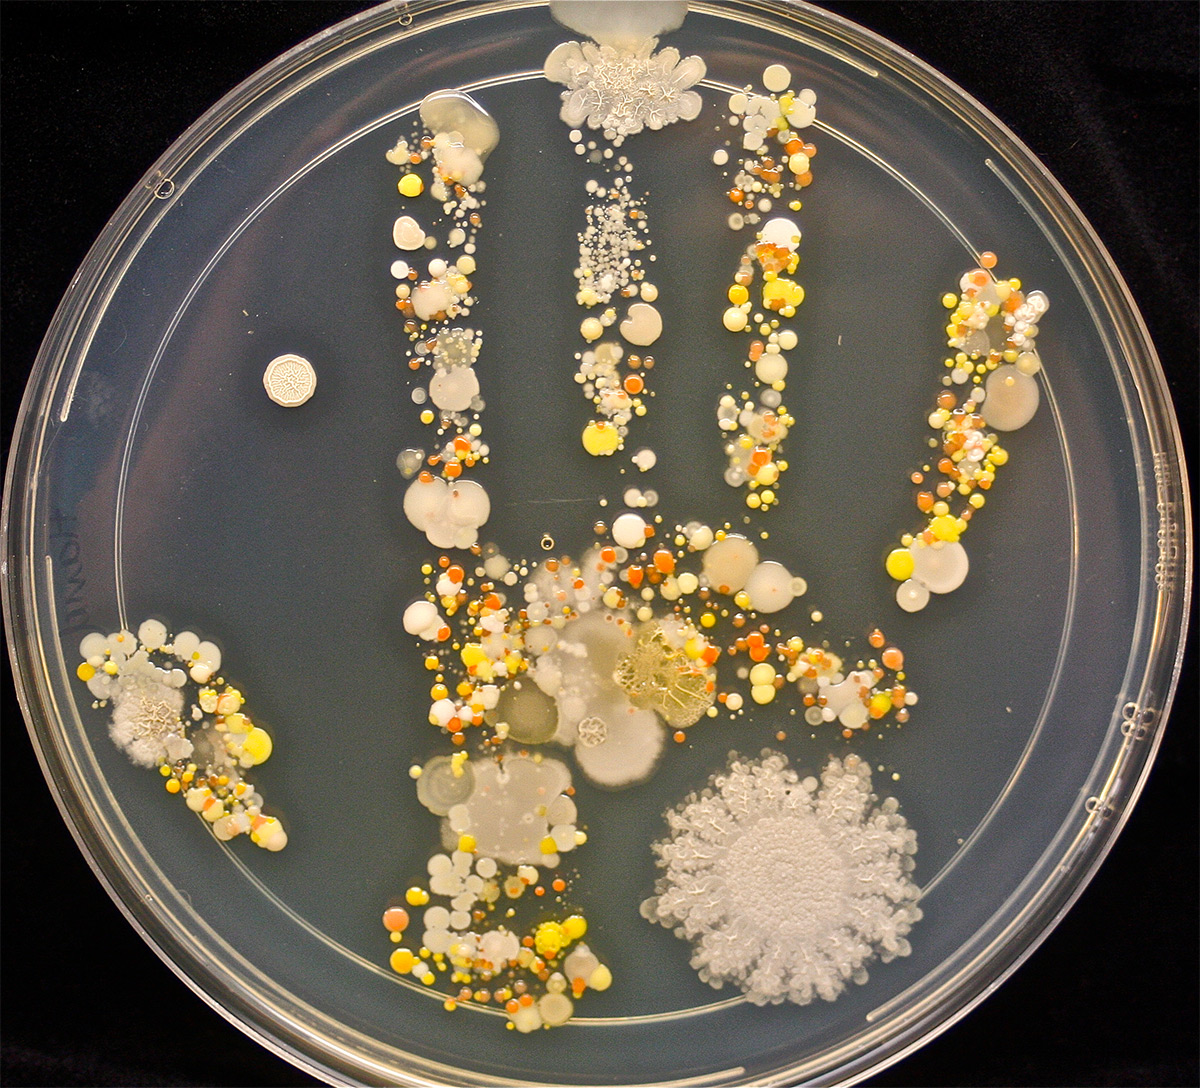 Les bactéries d’une main d’enfant